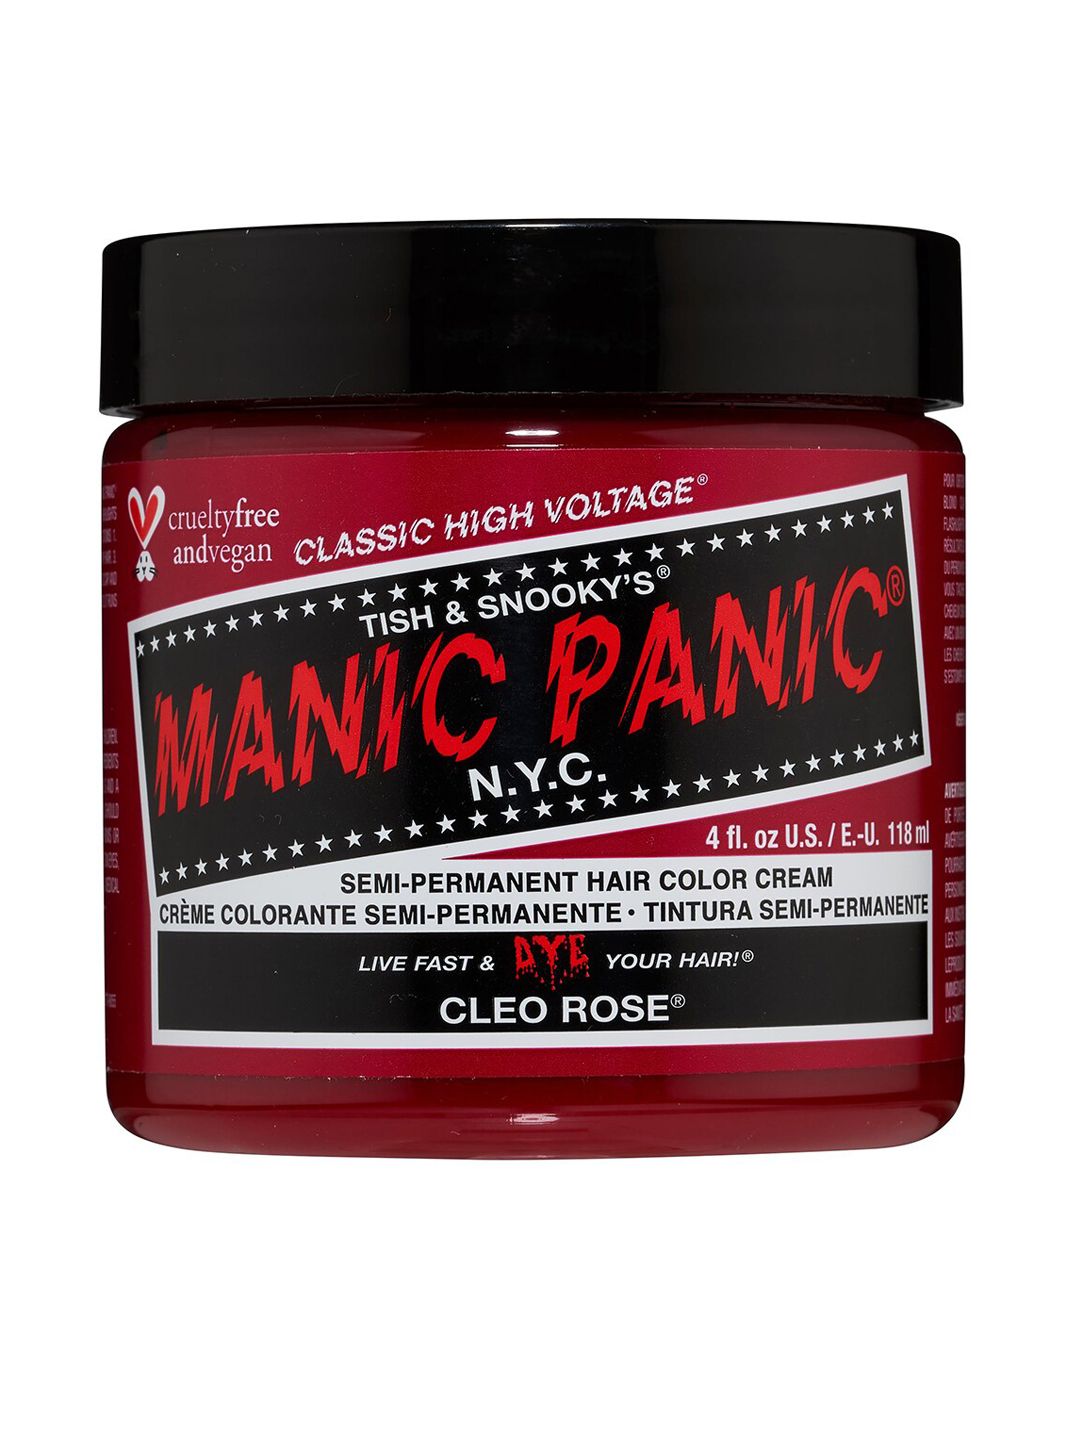 MANIC PANIC Classic High Voltage Semi-Permanent Hair Colour Cream - Cleo Rose Price in India